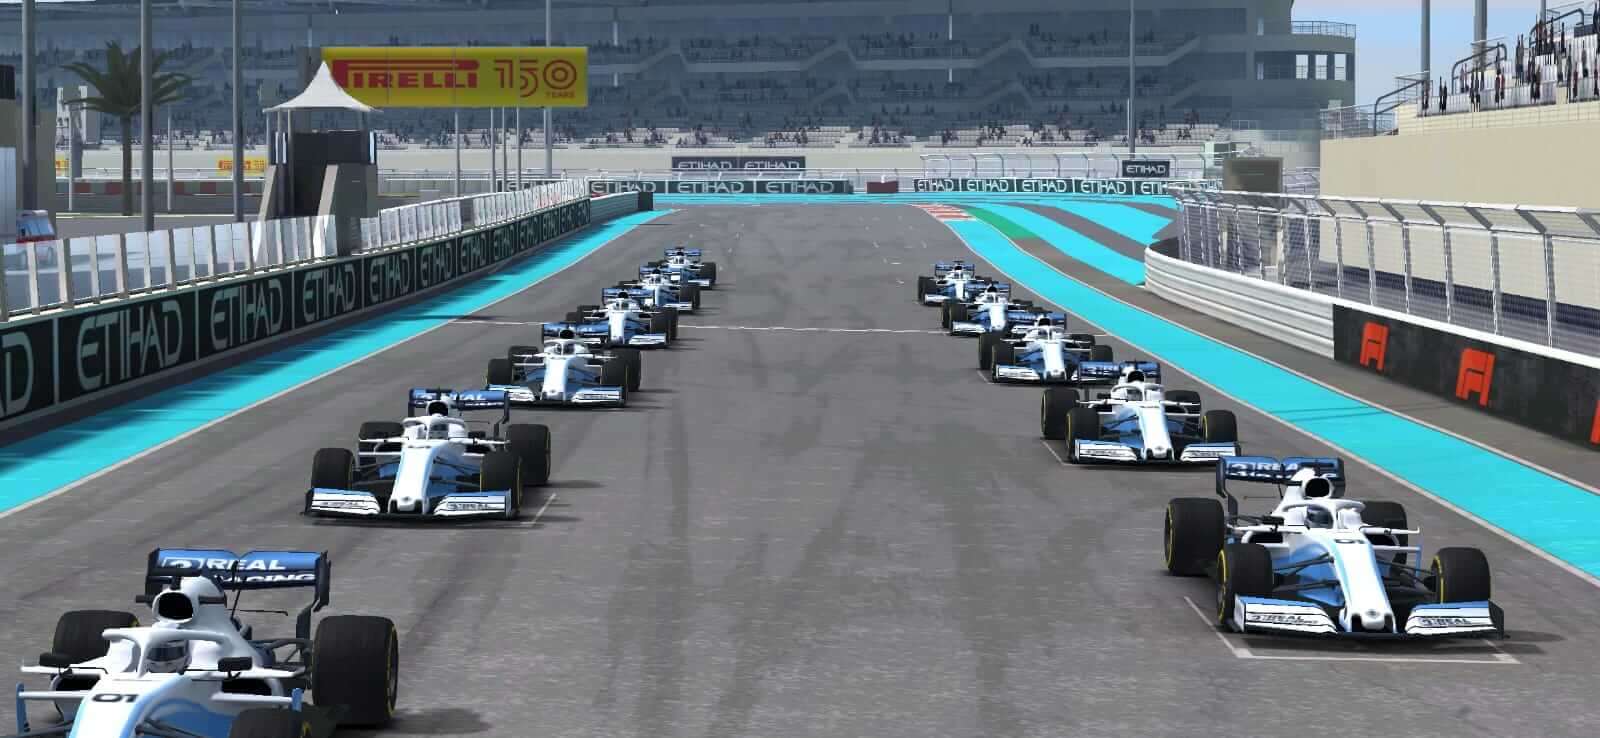 Capture d'écran de Real Racing 3